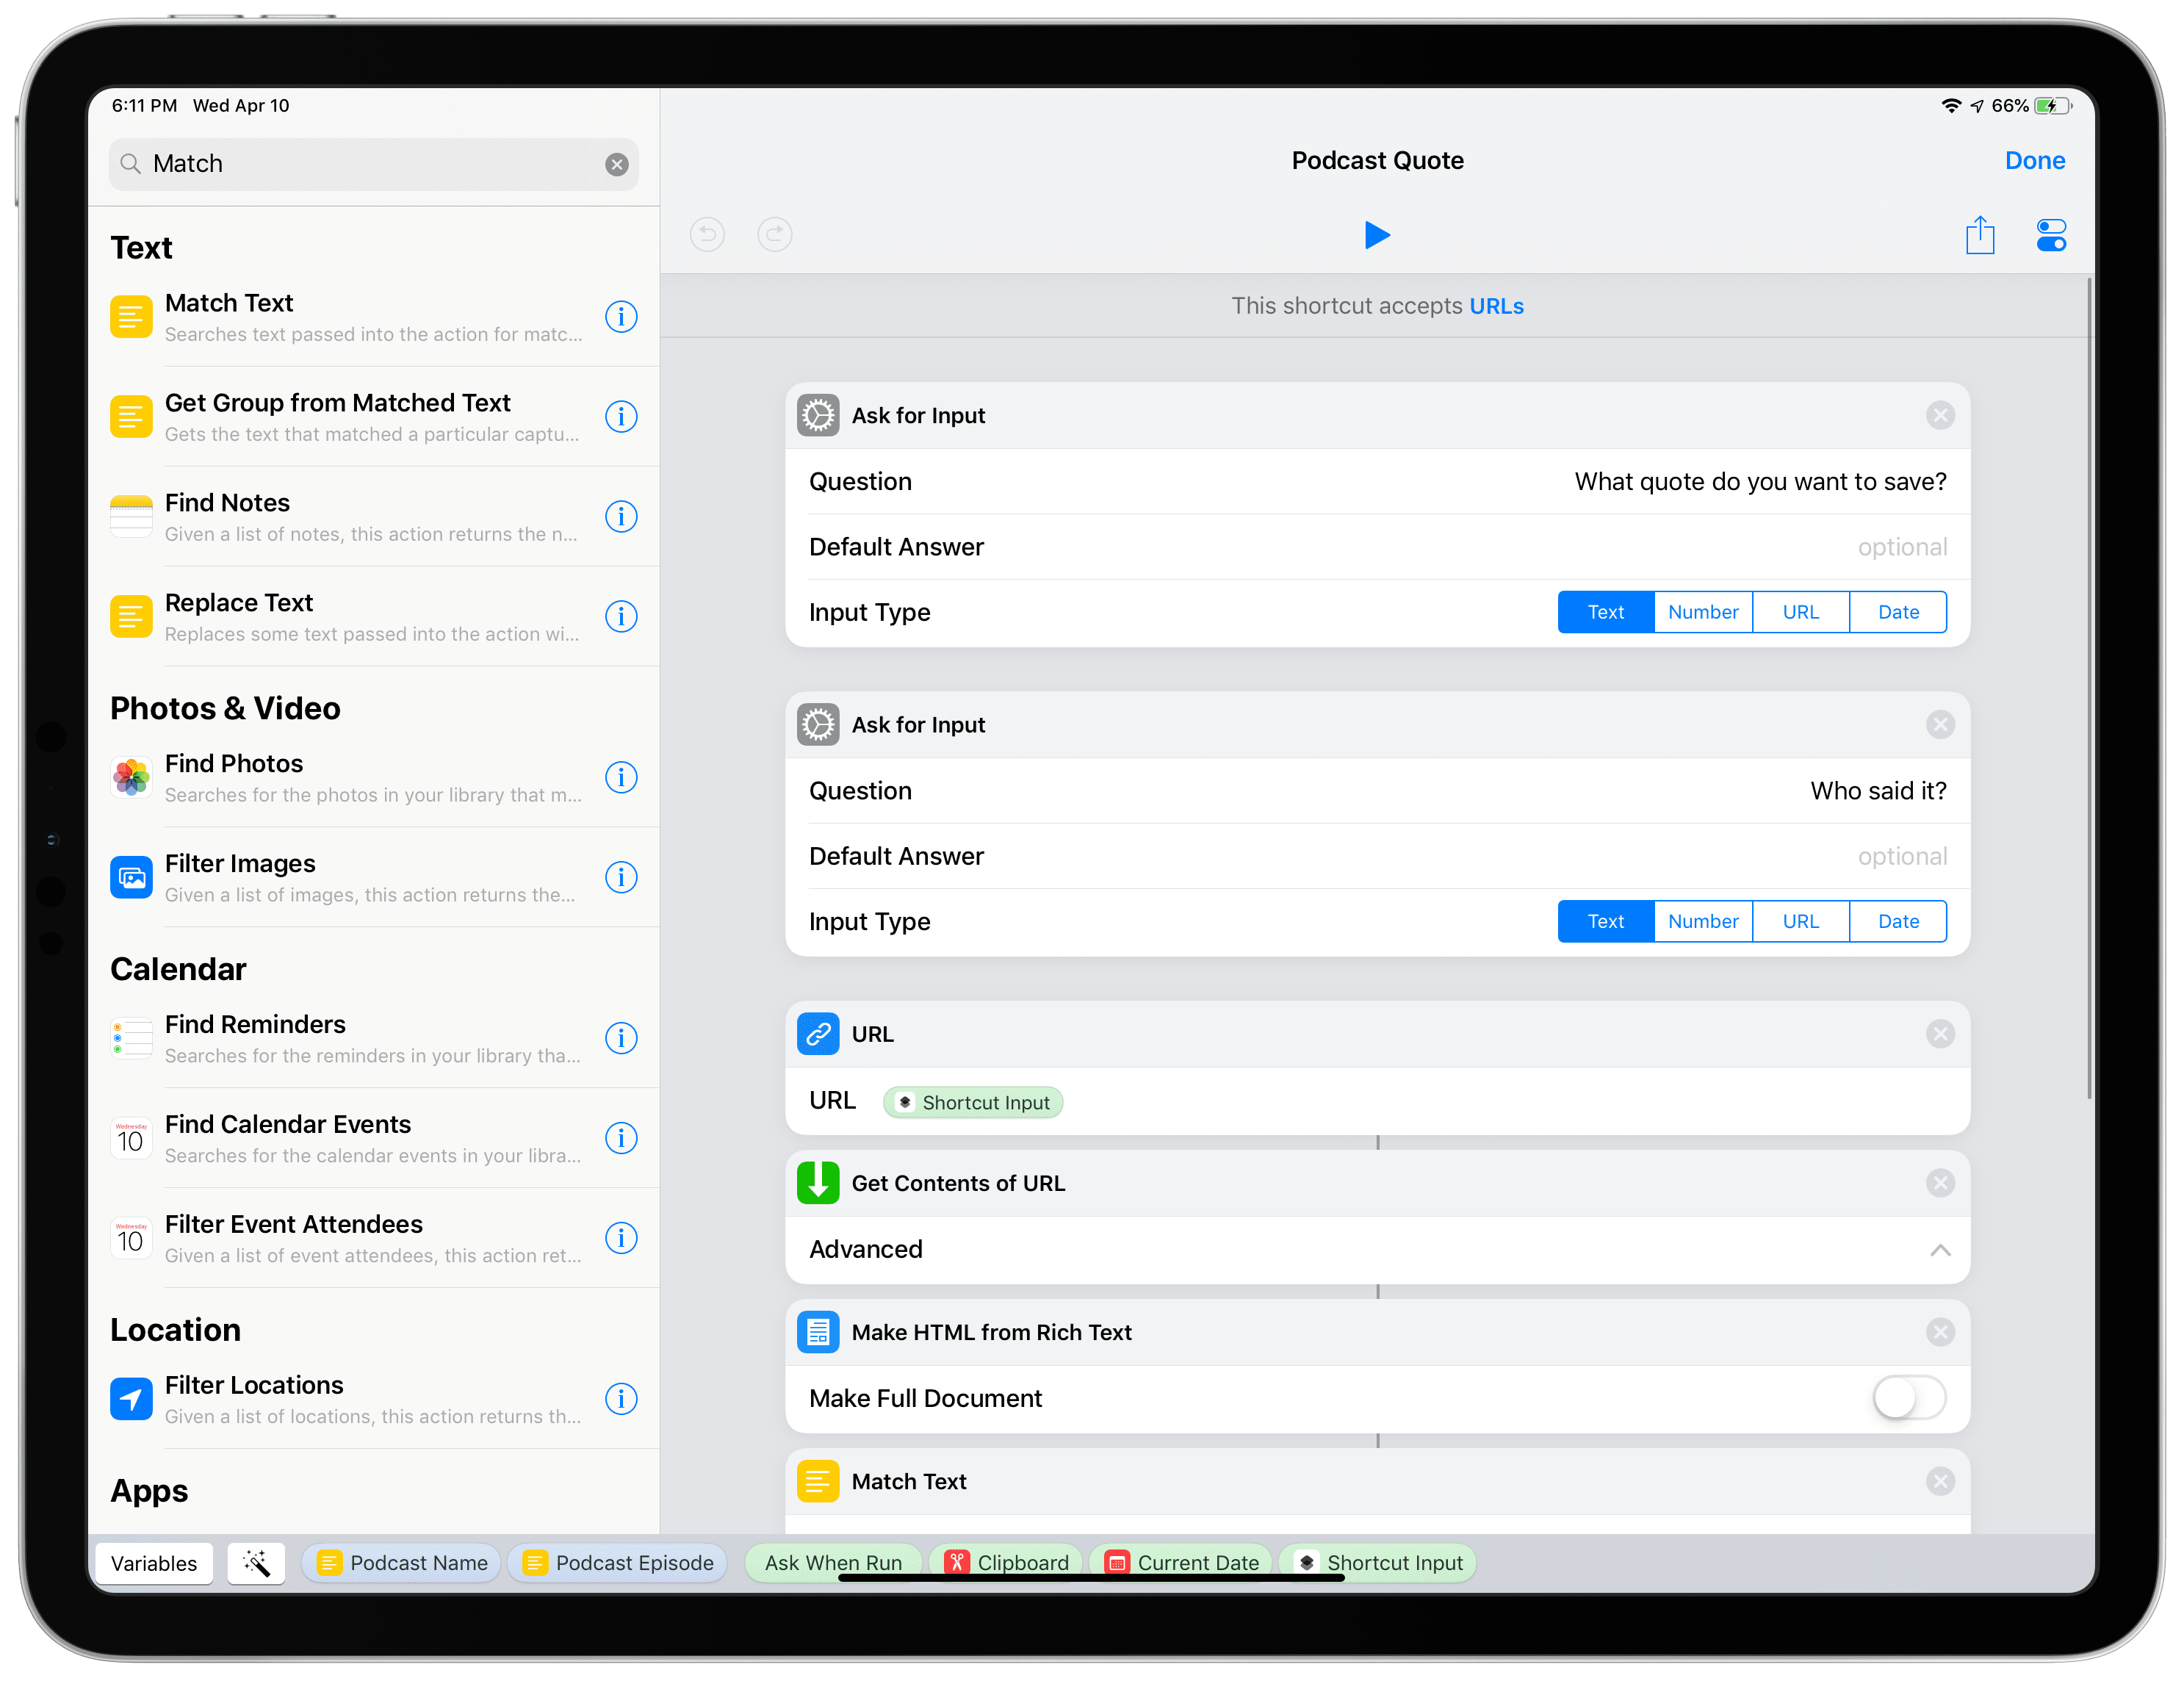 Screenshot of an iPad showing the Shortcuts app